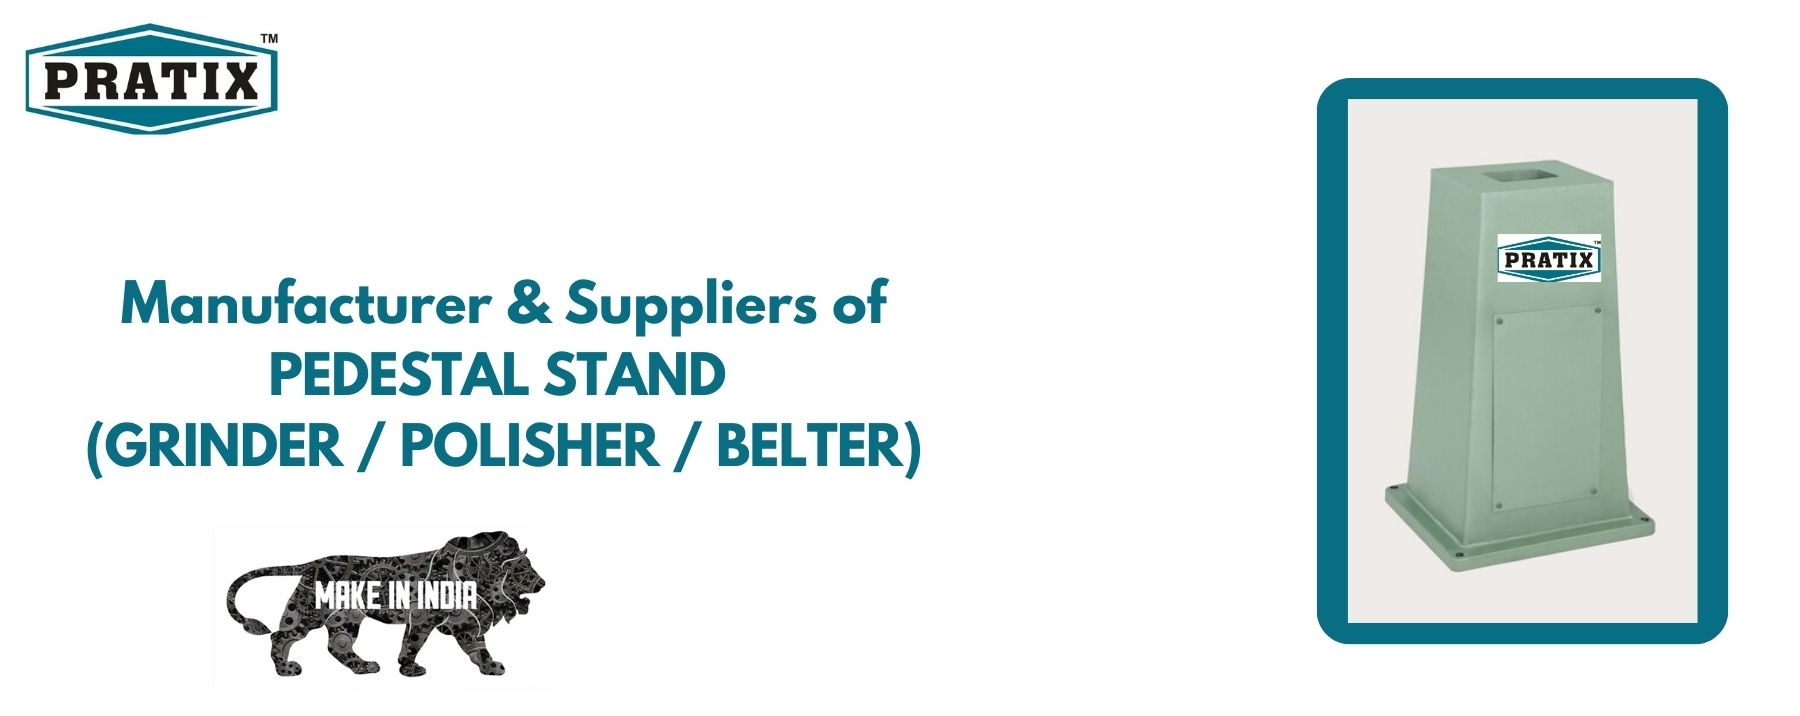 PEDESTAL STAND (GRINDER / POLISHER / BELTER) MANUFACTURER